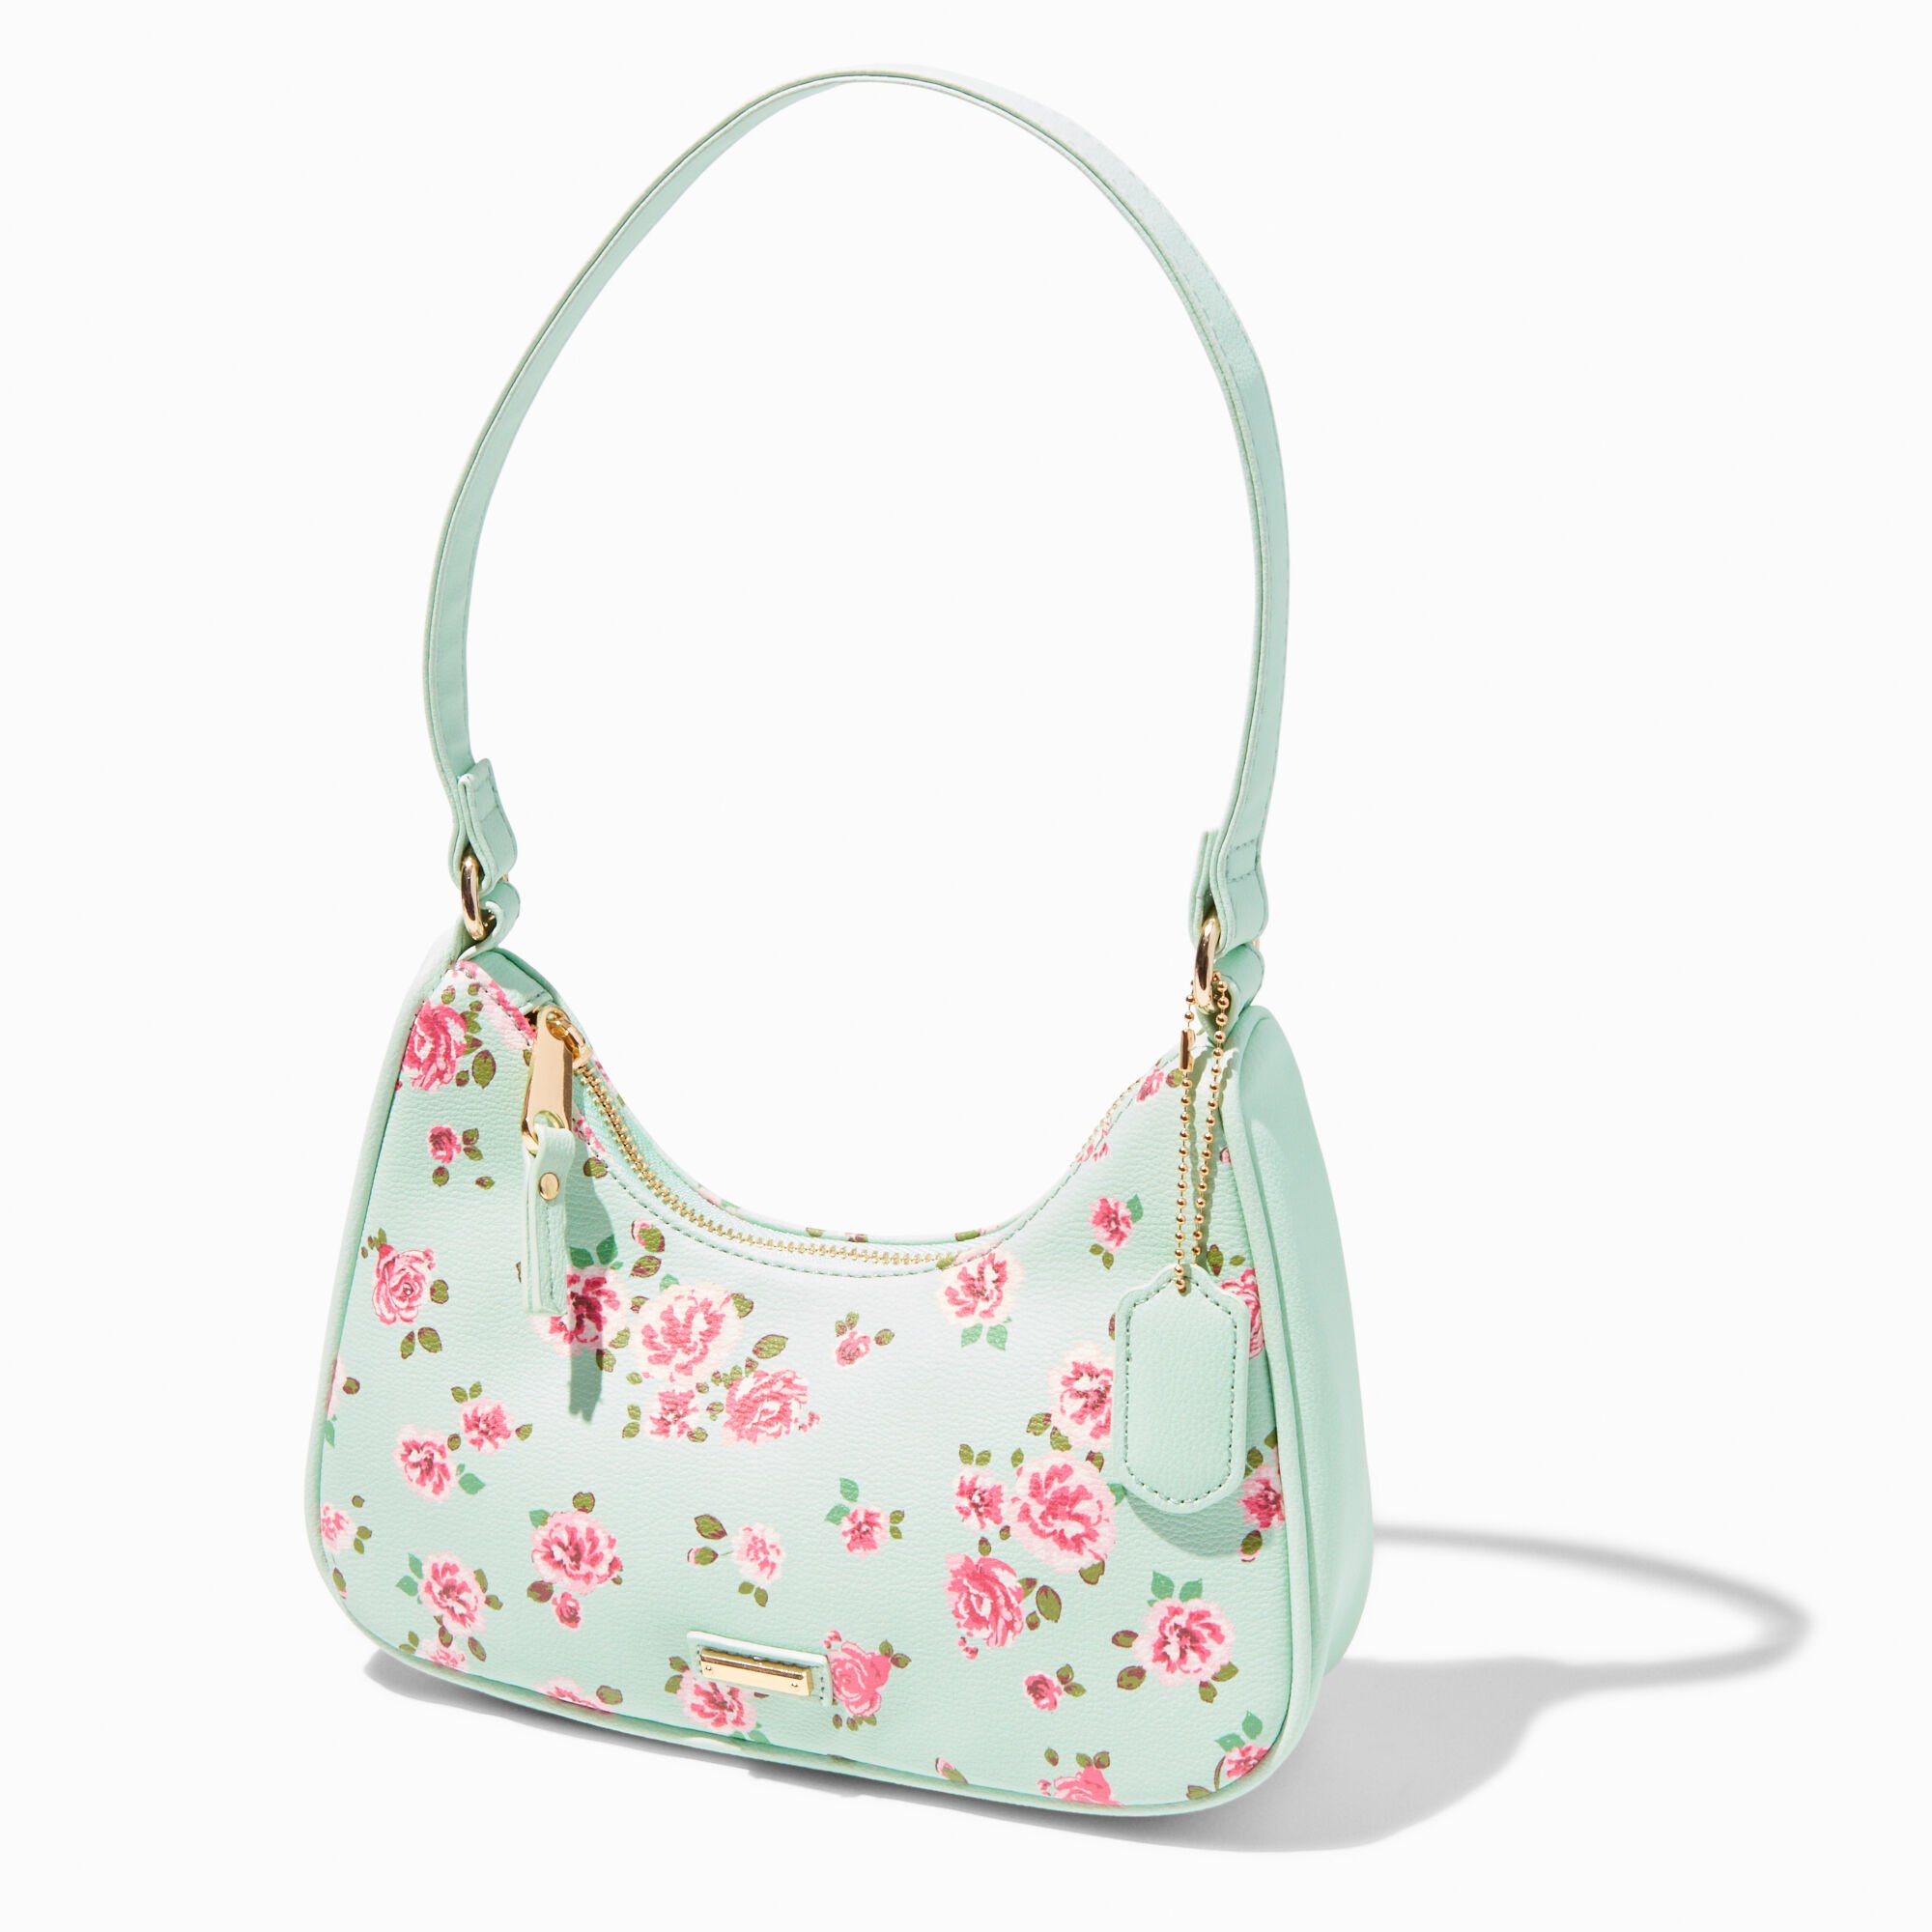 View Claires Pink Floral Shoulder Bag Mint Green information